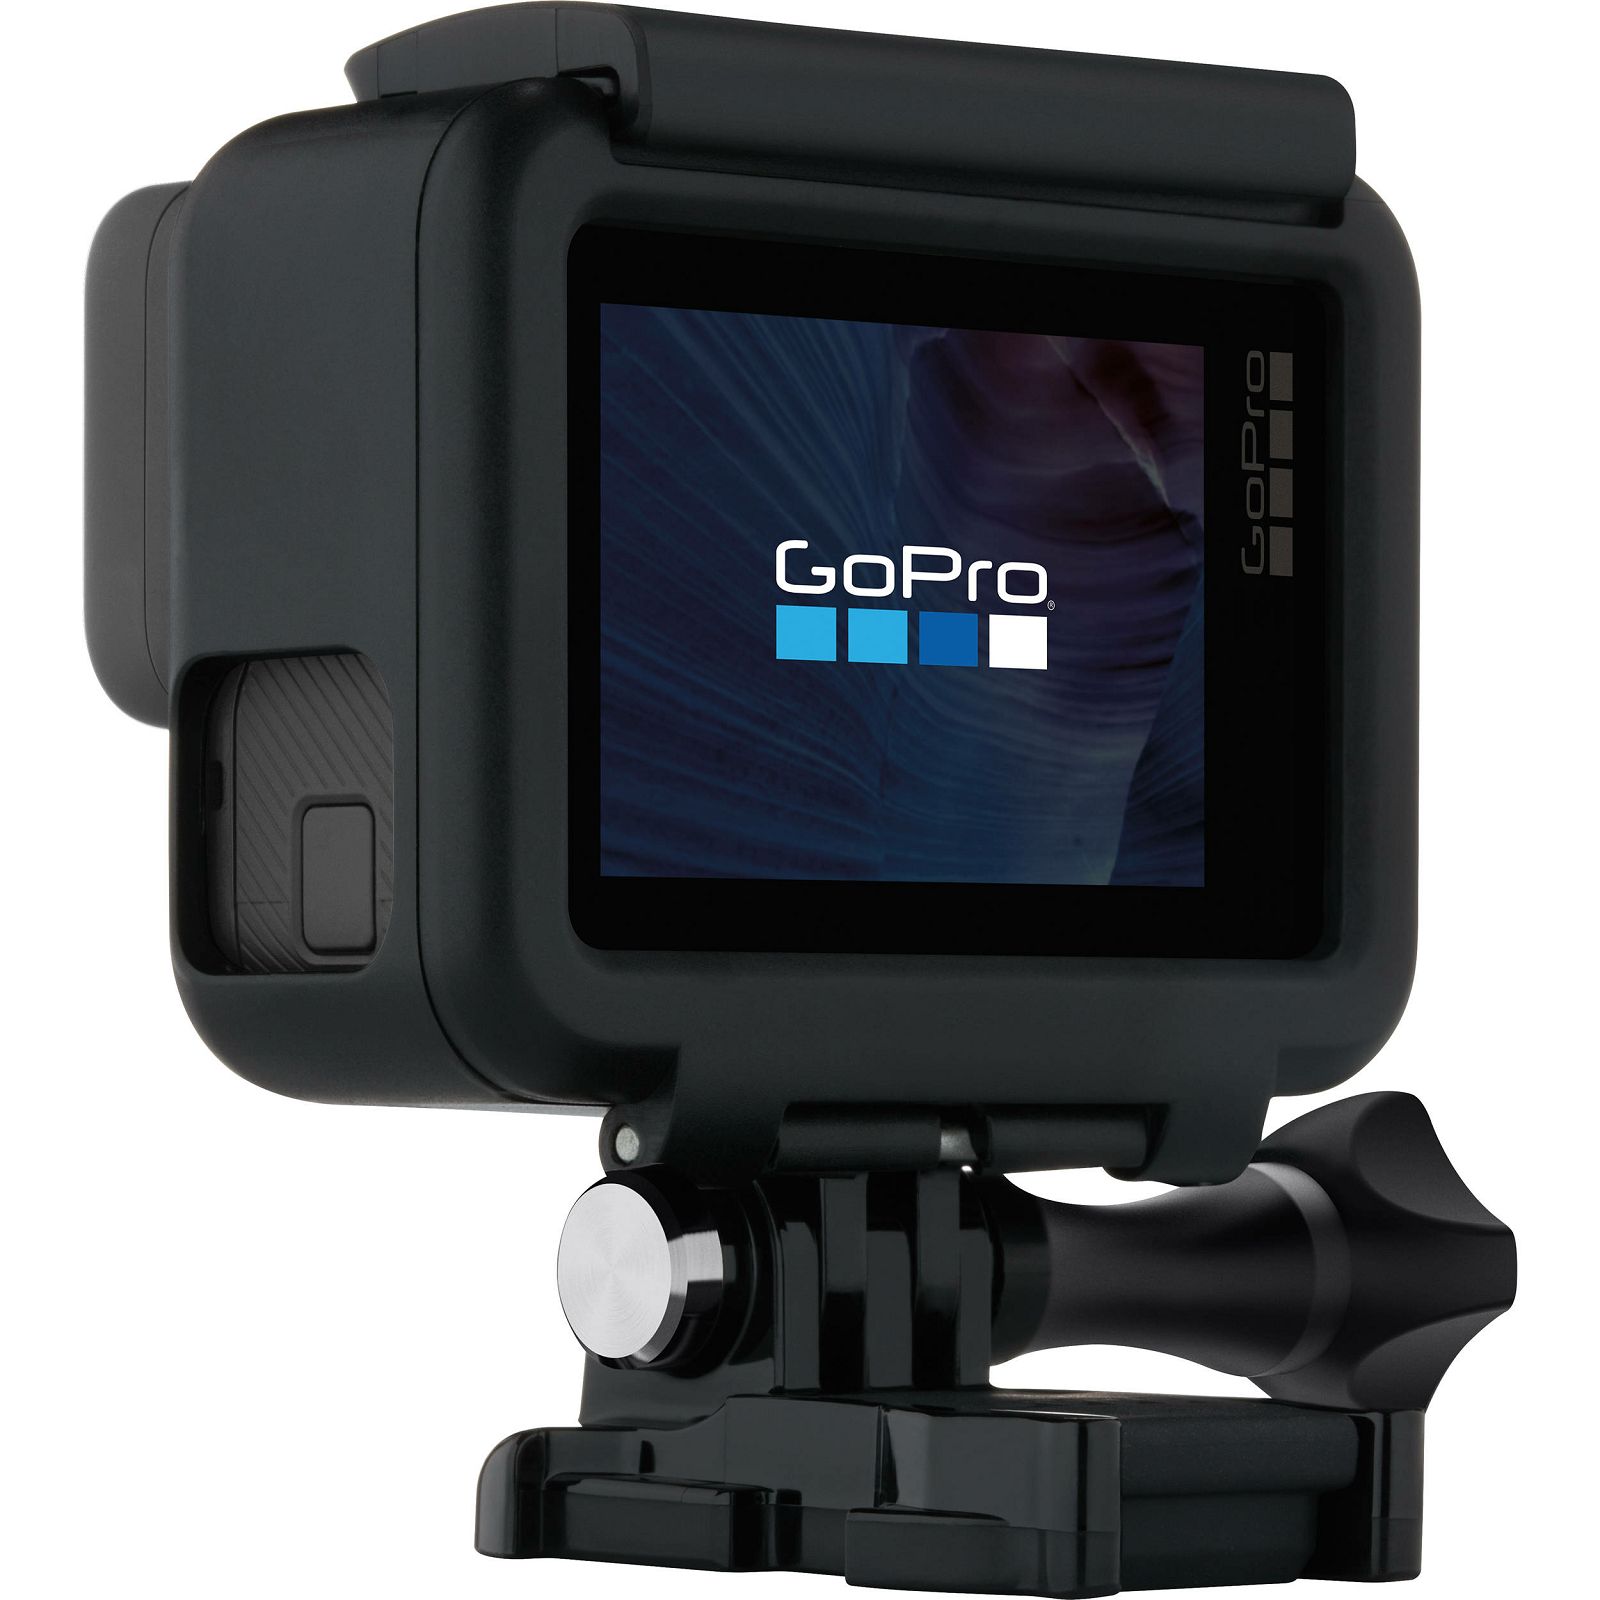 Гоу про 6. Экшн-камера GOPRO hero5. Экшн-камера GOPRO hero5 (CHDHX-501). Камера GOPRO Hero 5. GOPRO Hero 5 Black Edition.